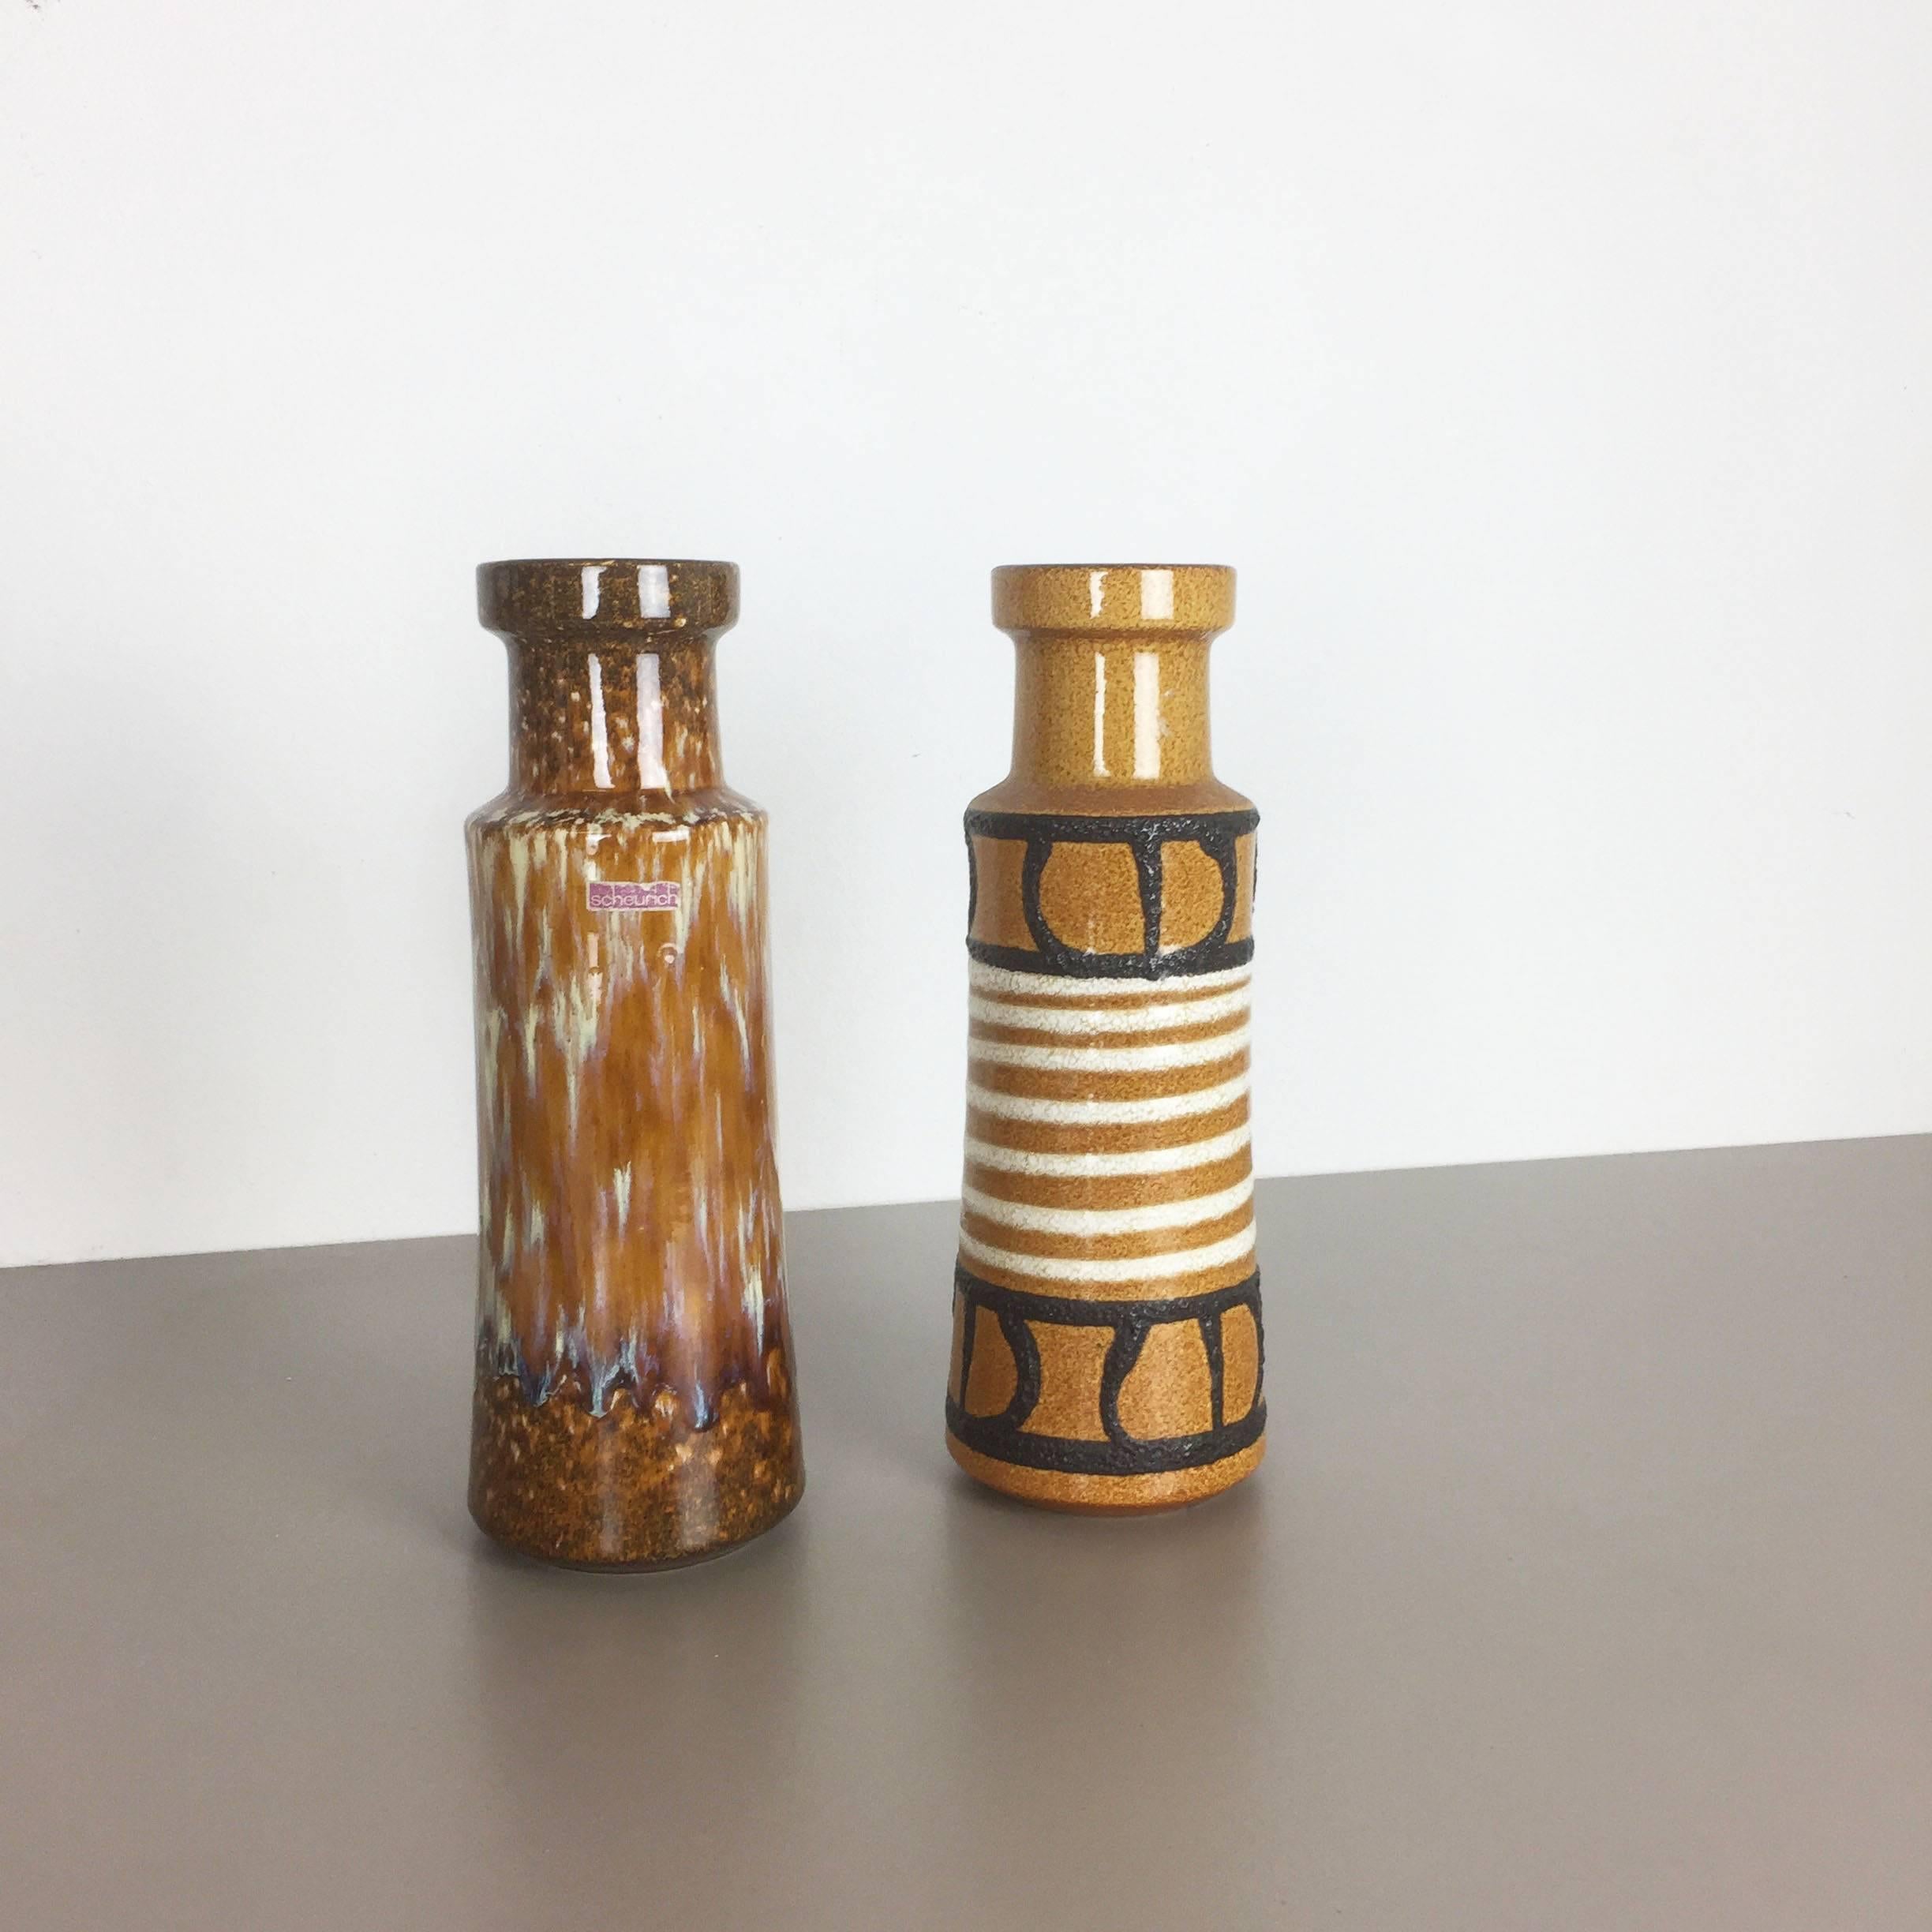 Artikel:

Set aus zwei fetten Lavakunstvasen


Produzent:

Scheurich, Deutschland


Entwurf:

Nr. 205 32



Jahrzehnt:

1970s


 

Diese originelle Vintage-Vase wurde in den 1970er Jahren in Deutschland hergestellt. Sie ist